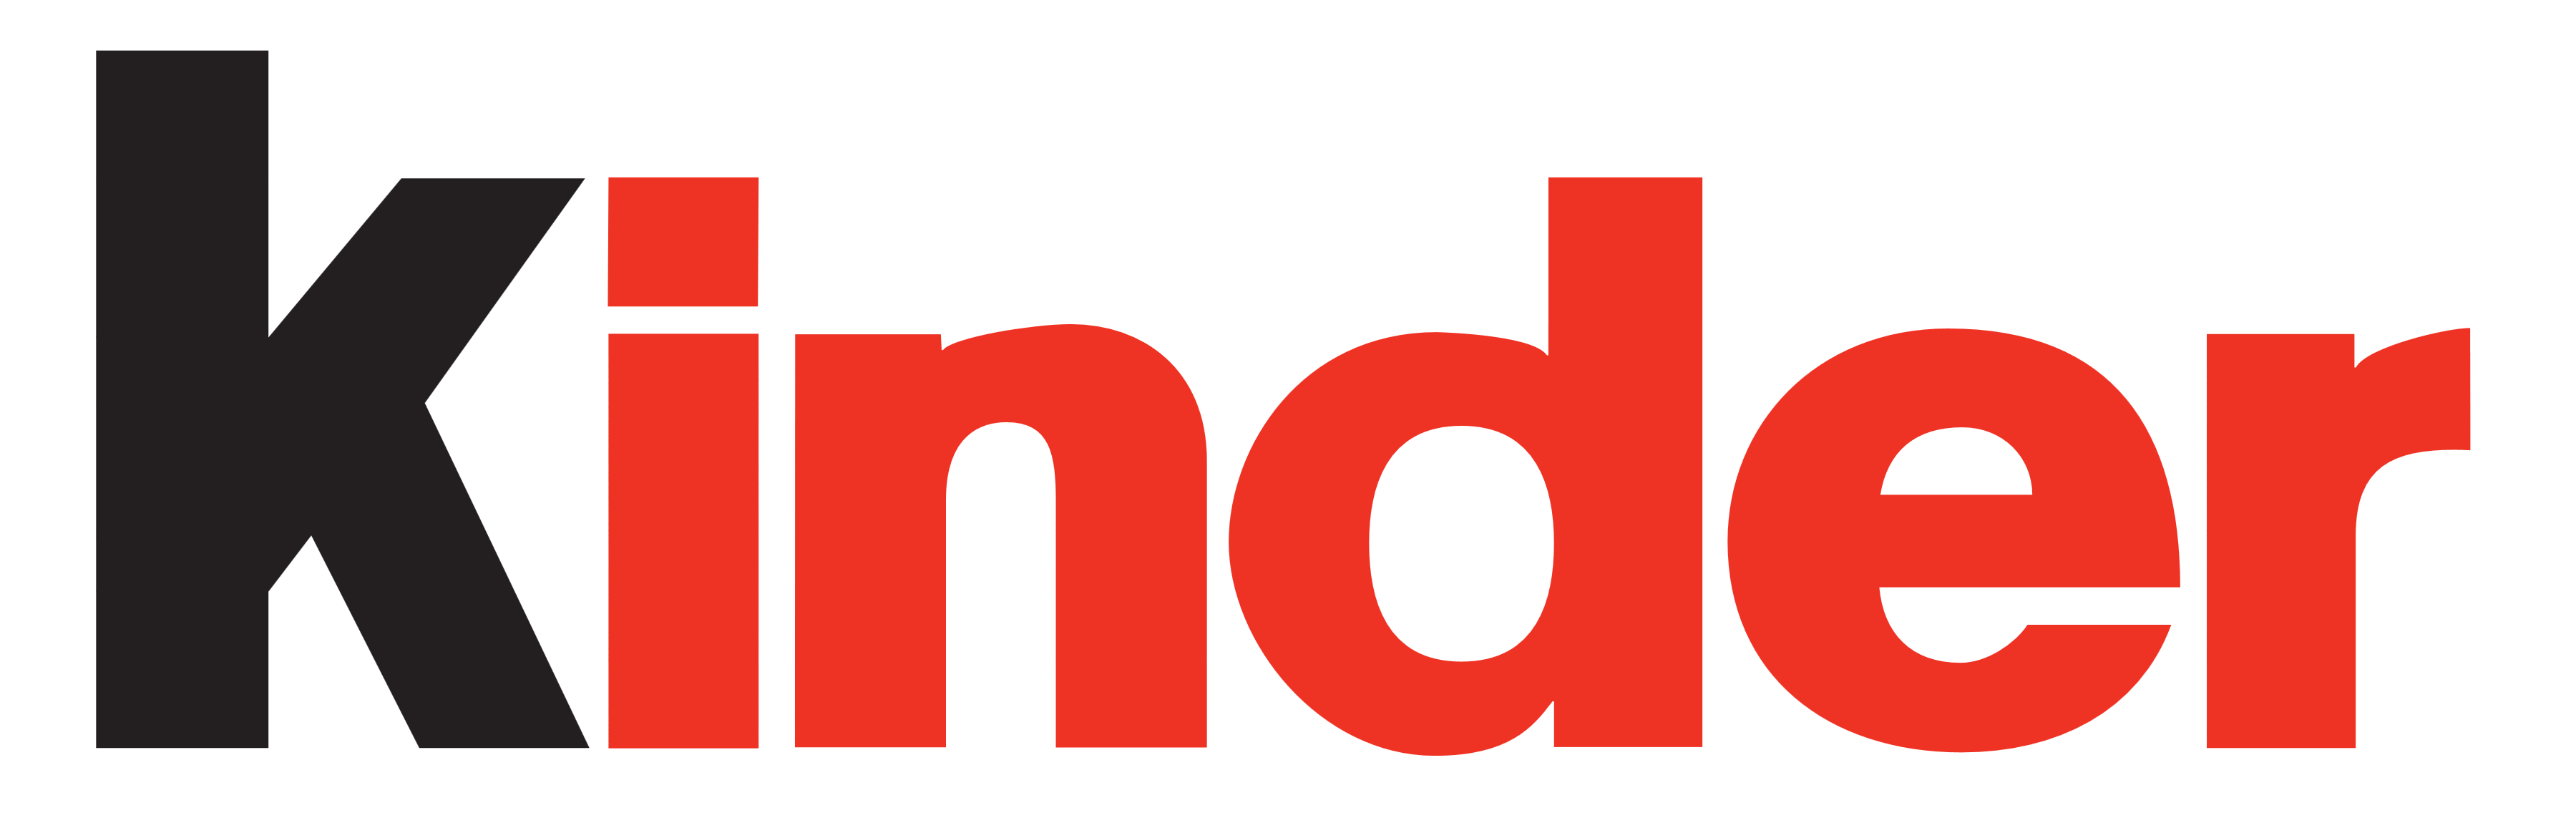 Kinder logo, logotype